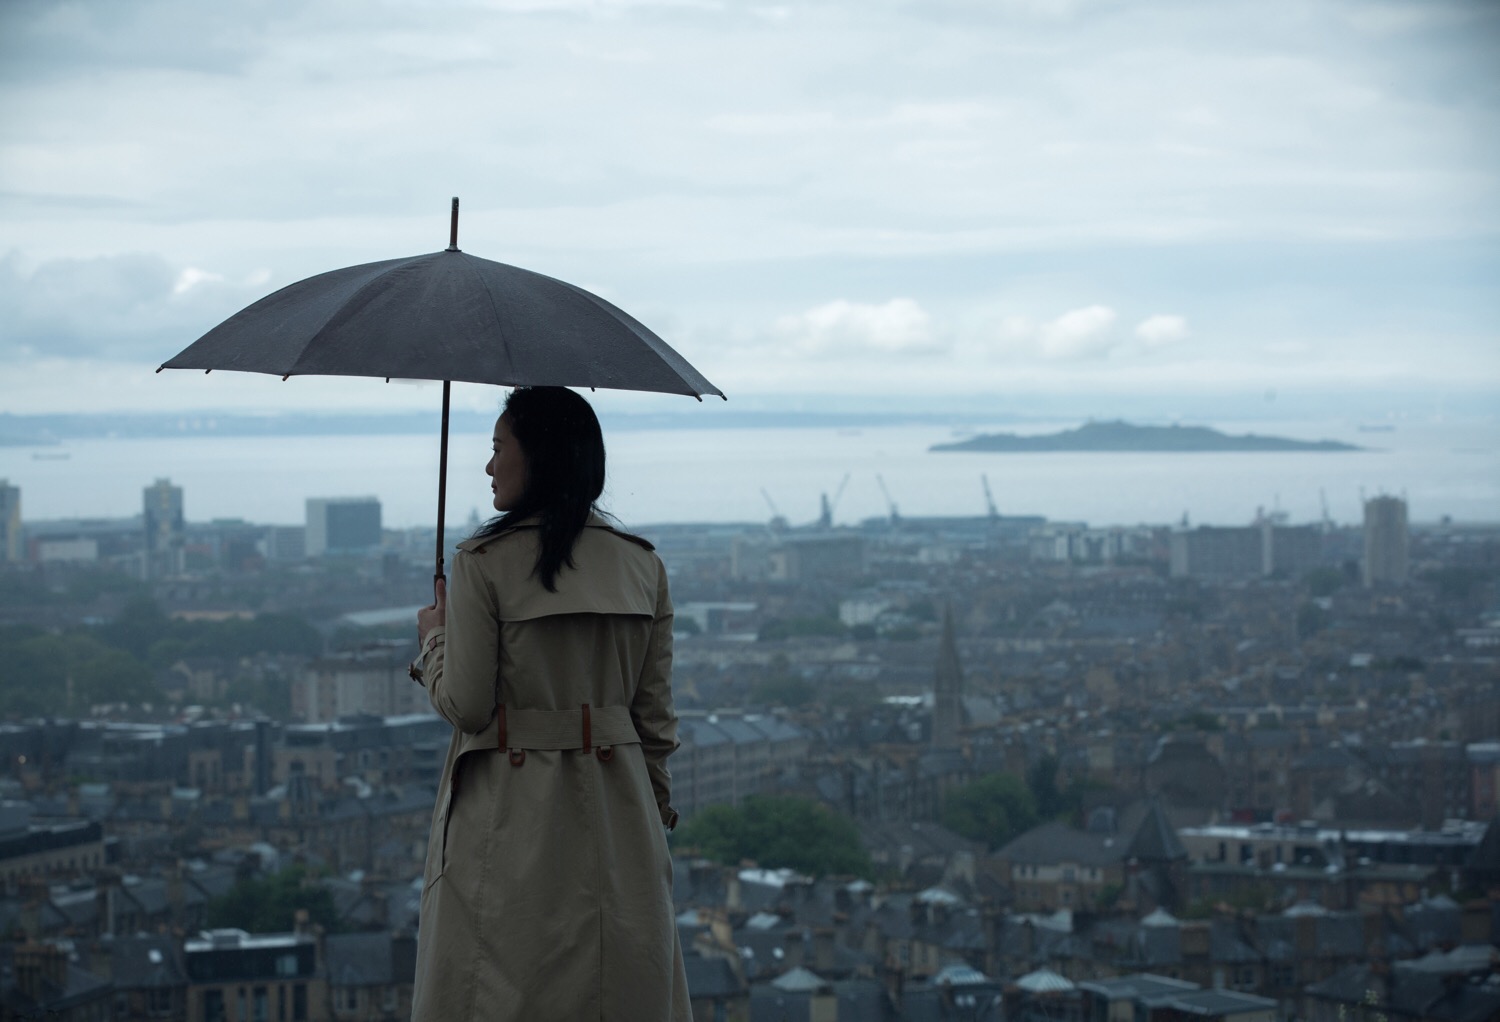 爱丁堡旅游大使咏梅英伦写真 在旅行中发现生活的美好